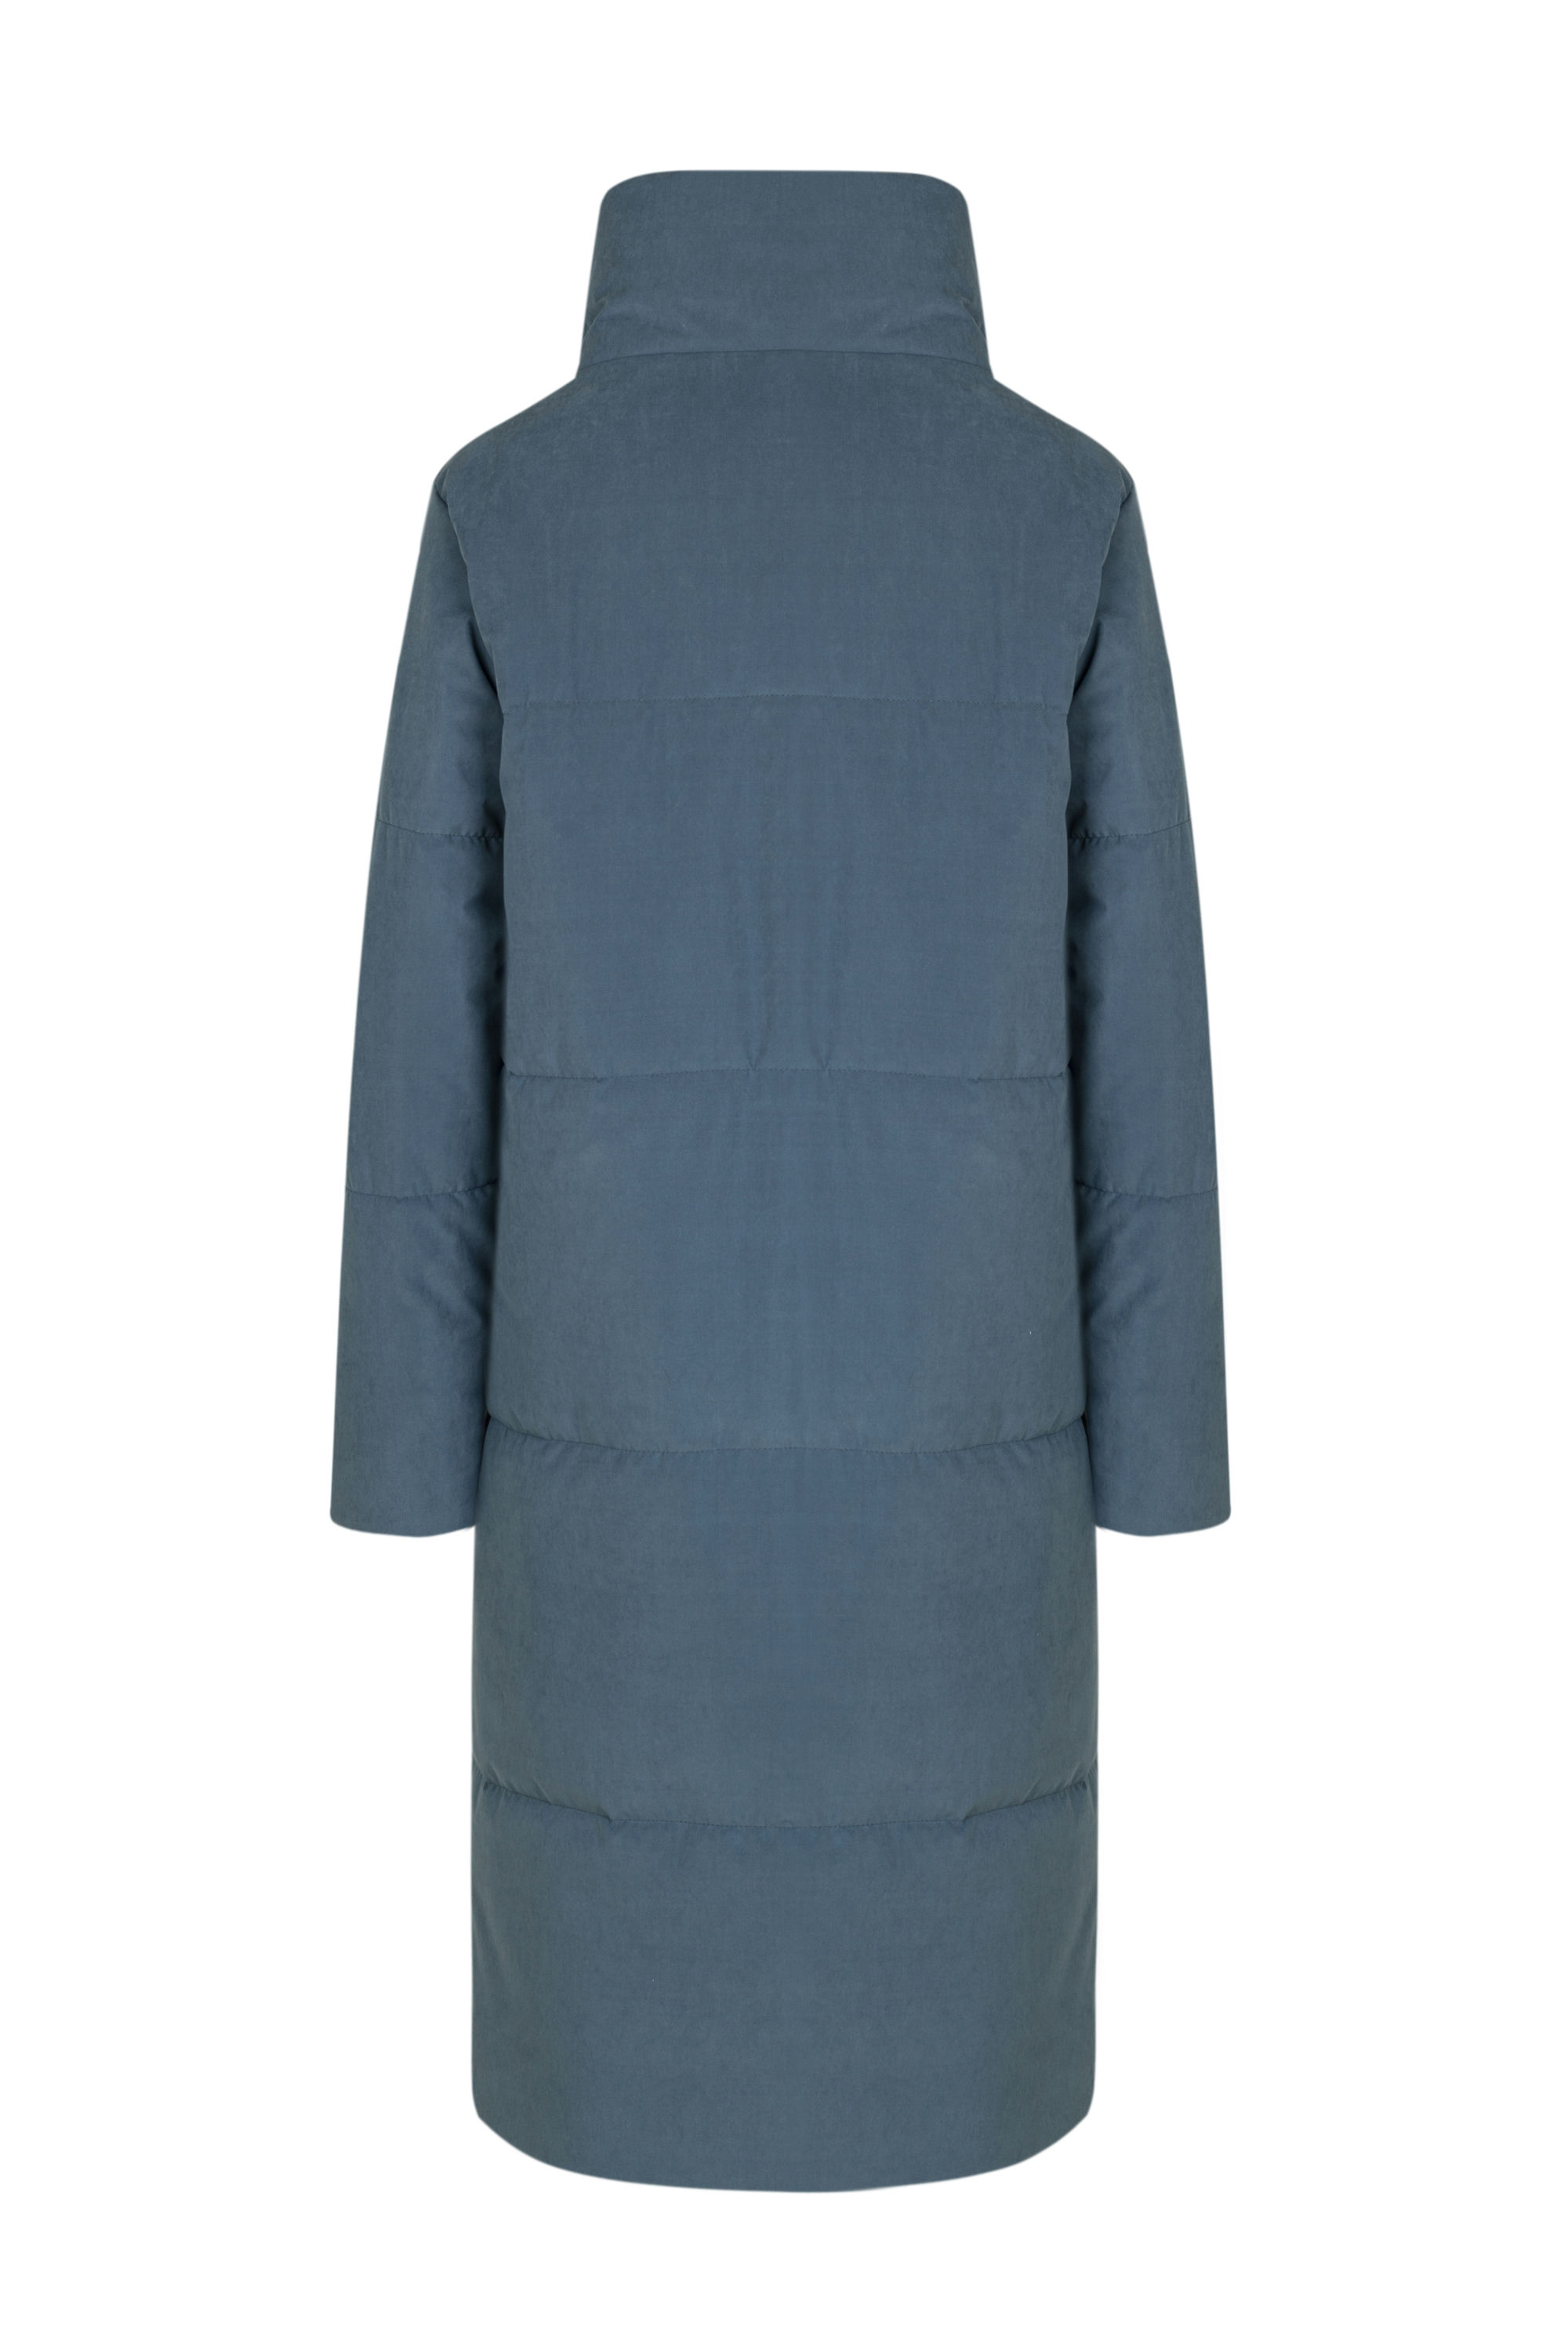 Пальто женское плащевое утепленное 5-12802-1. Фото 3.